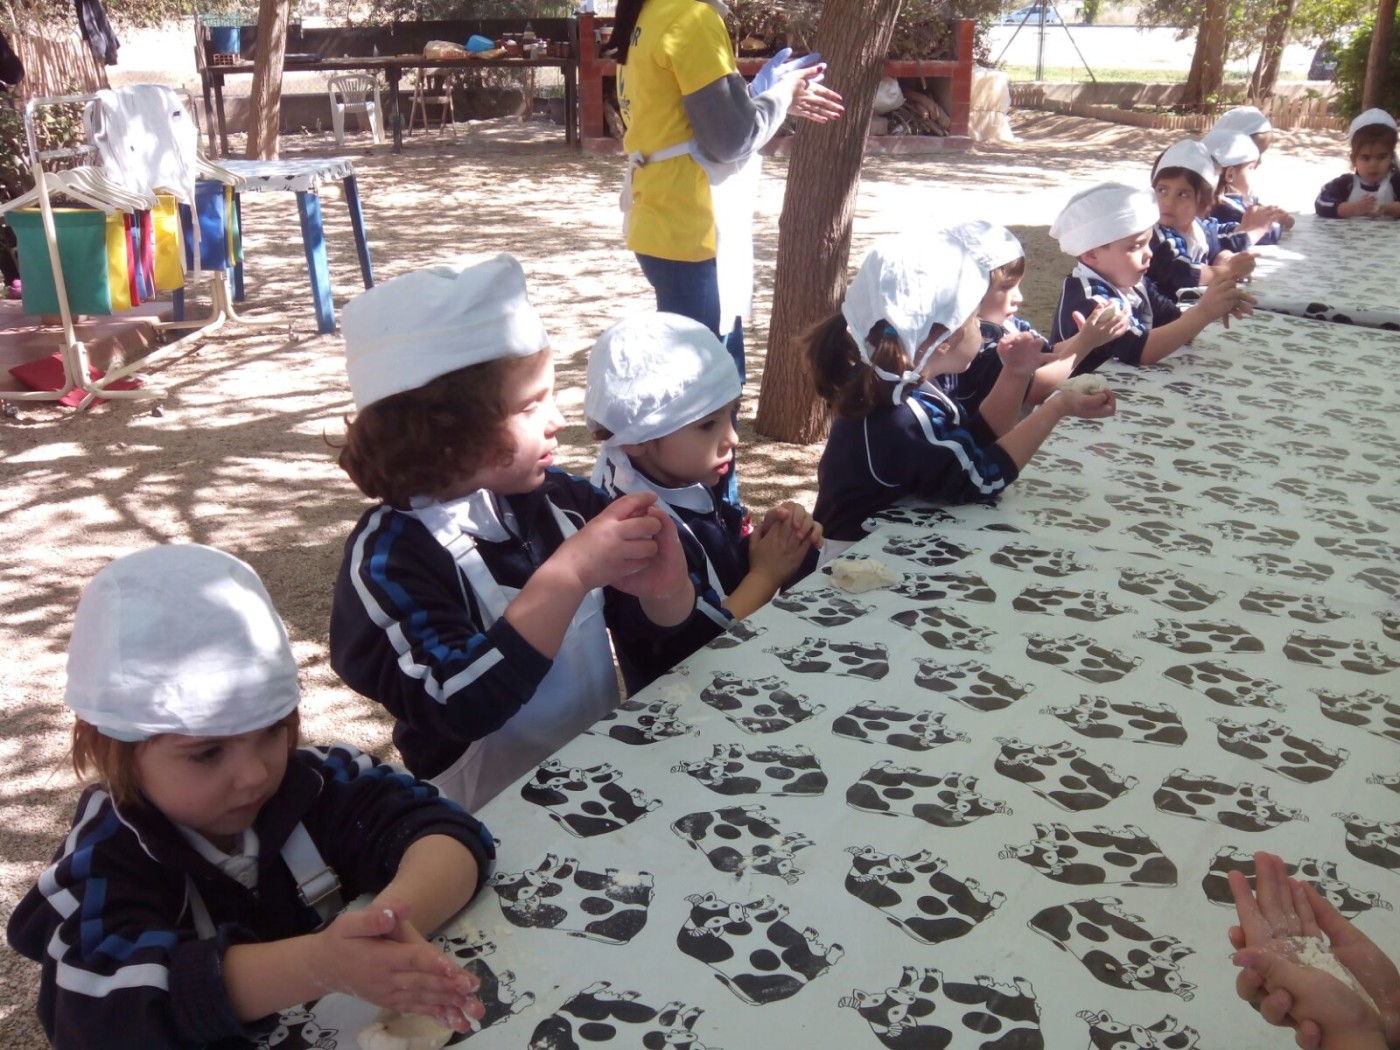 Excursión de Educación Infantil a la granja "Planeta Balú"